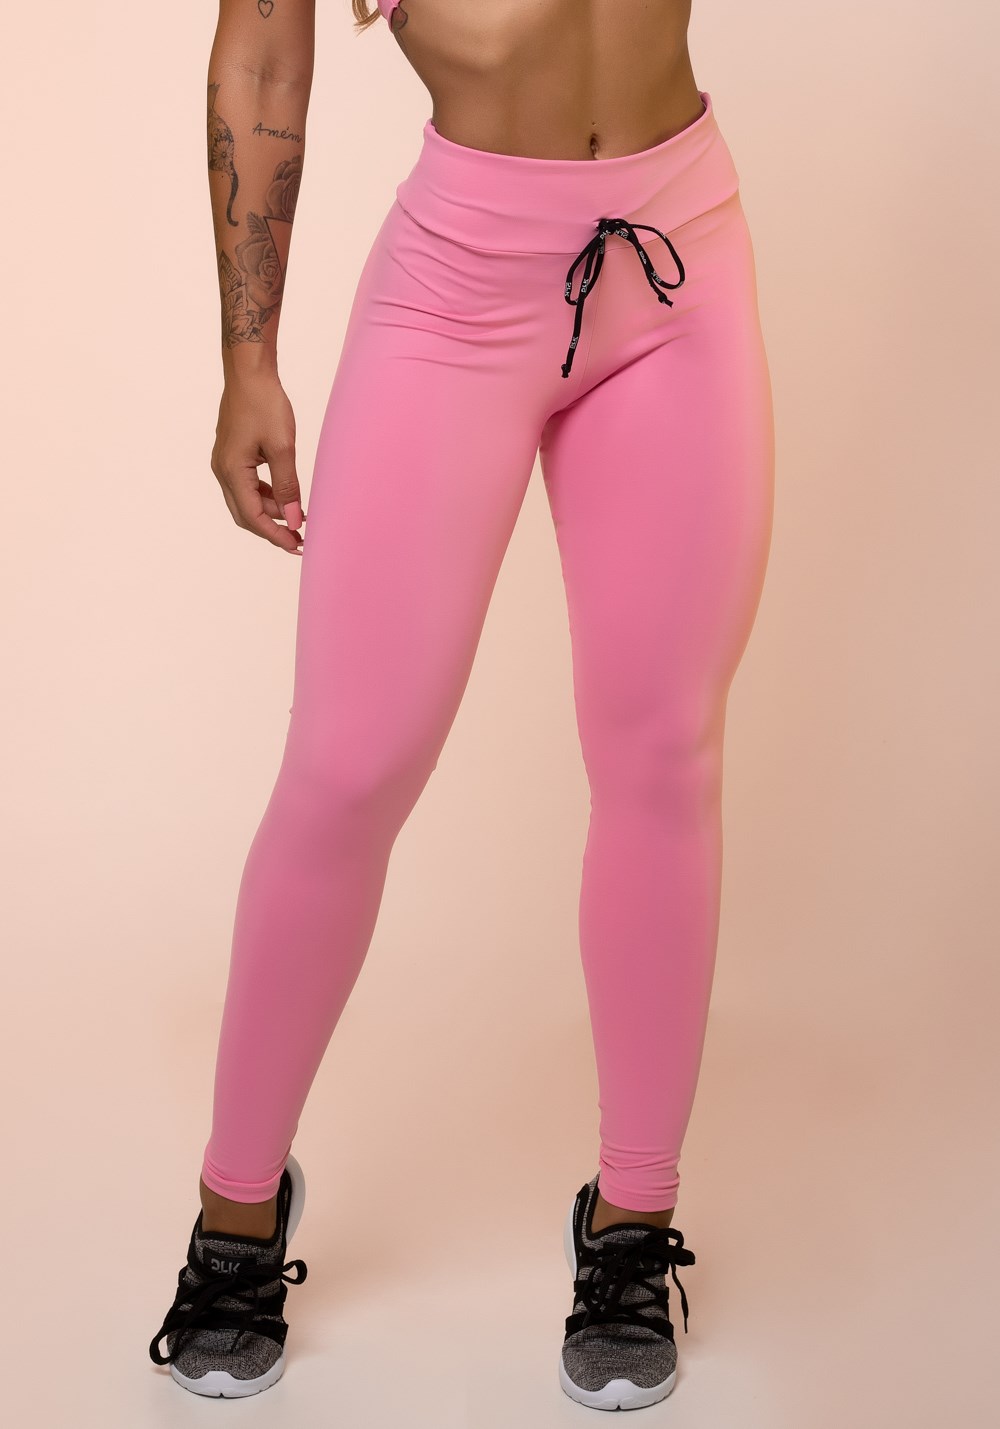 Calça legging rosa chiclete com cadarço básica